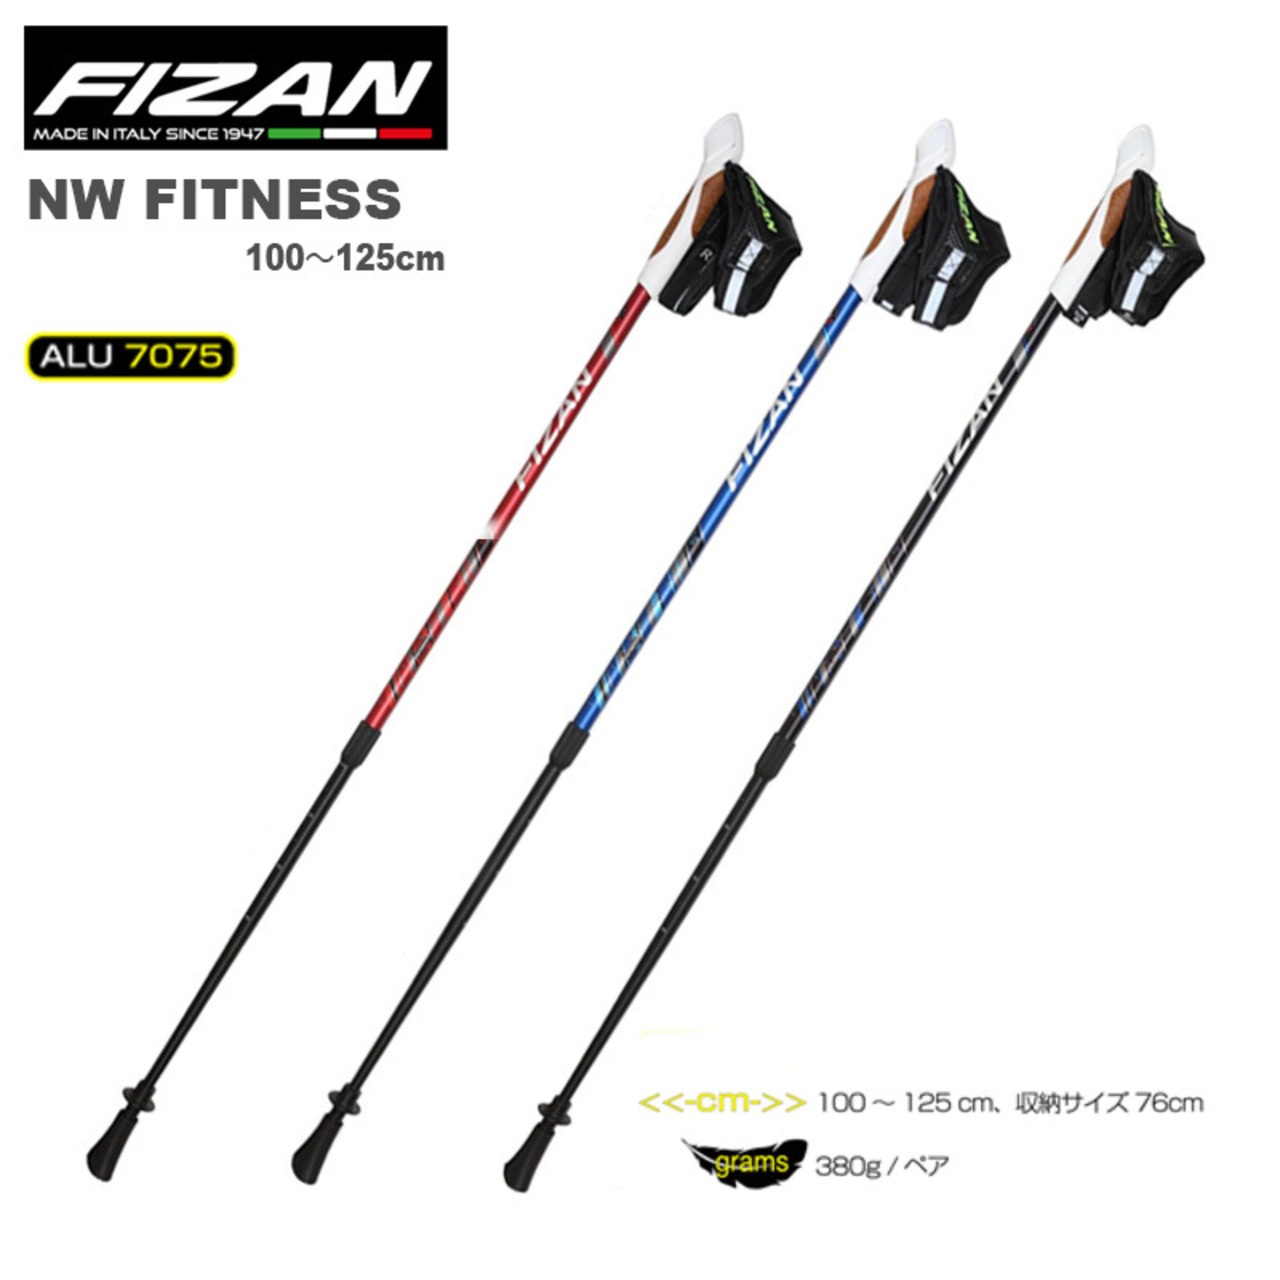 FIZAN フィザン NW fitness ウォーキングポール アジャスタブル 100〜125cm フィットネス 2本セット 軽量 コンパクト アルミ FZ-7540 FZ-7541 FZ-7542